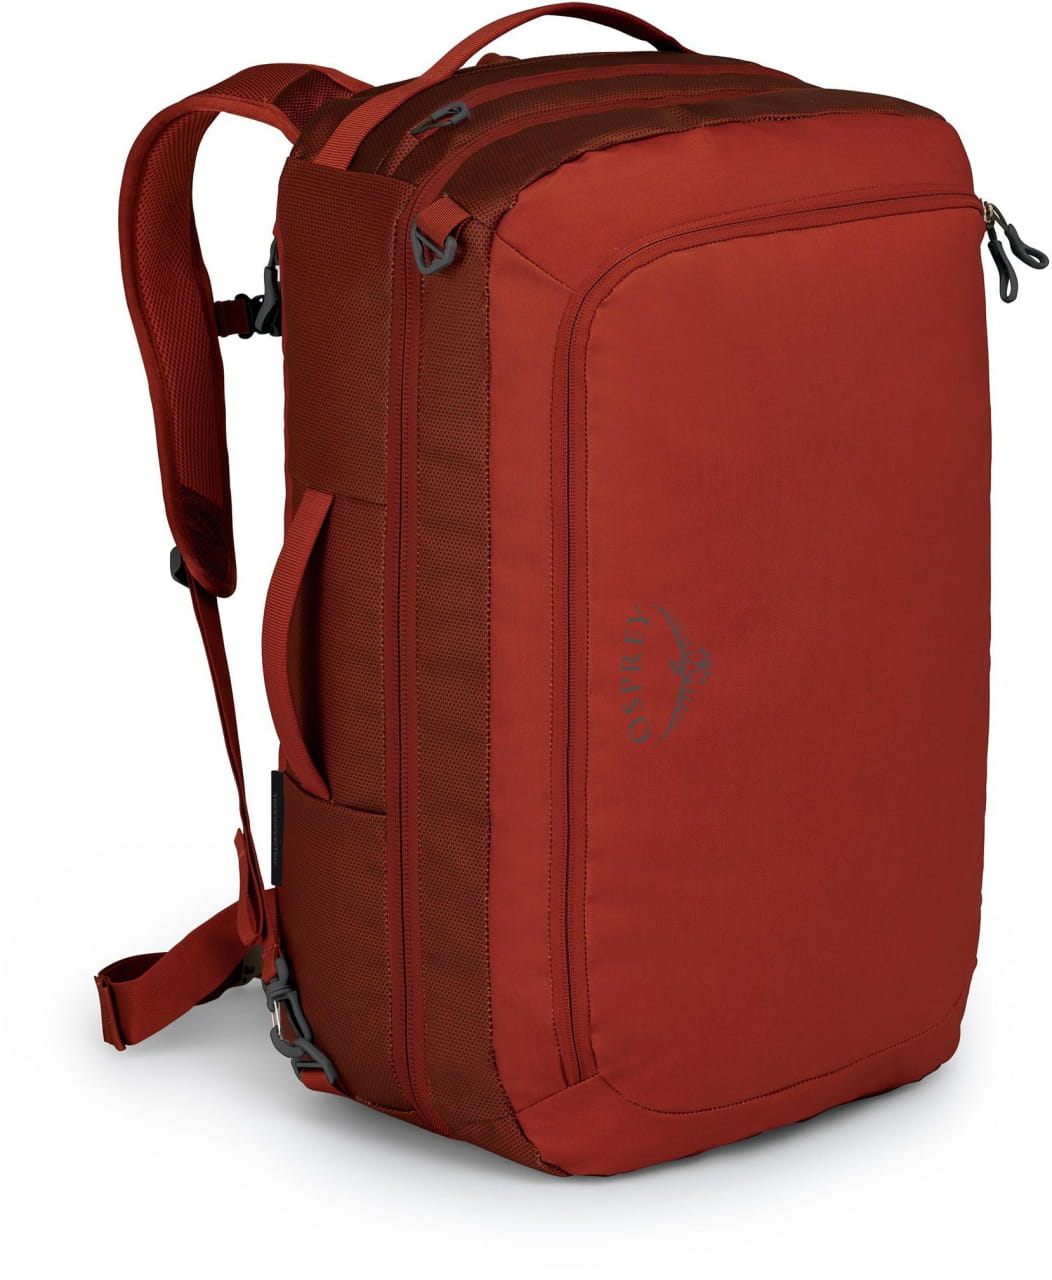 Sportovní taška Osprey Transporter Carry-On 44